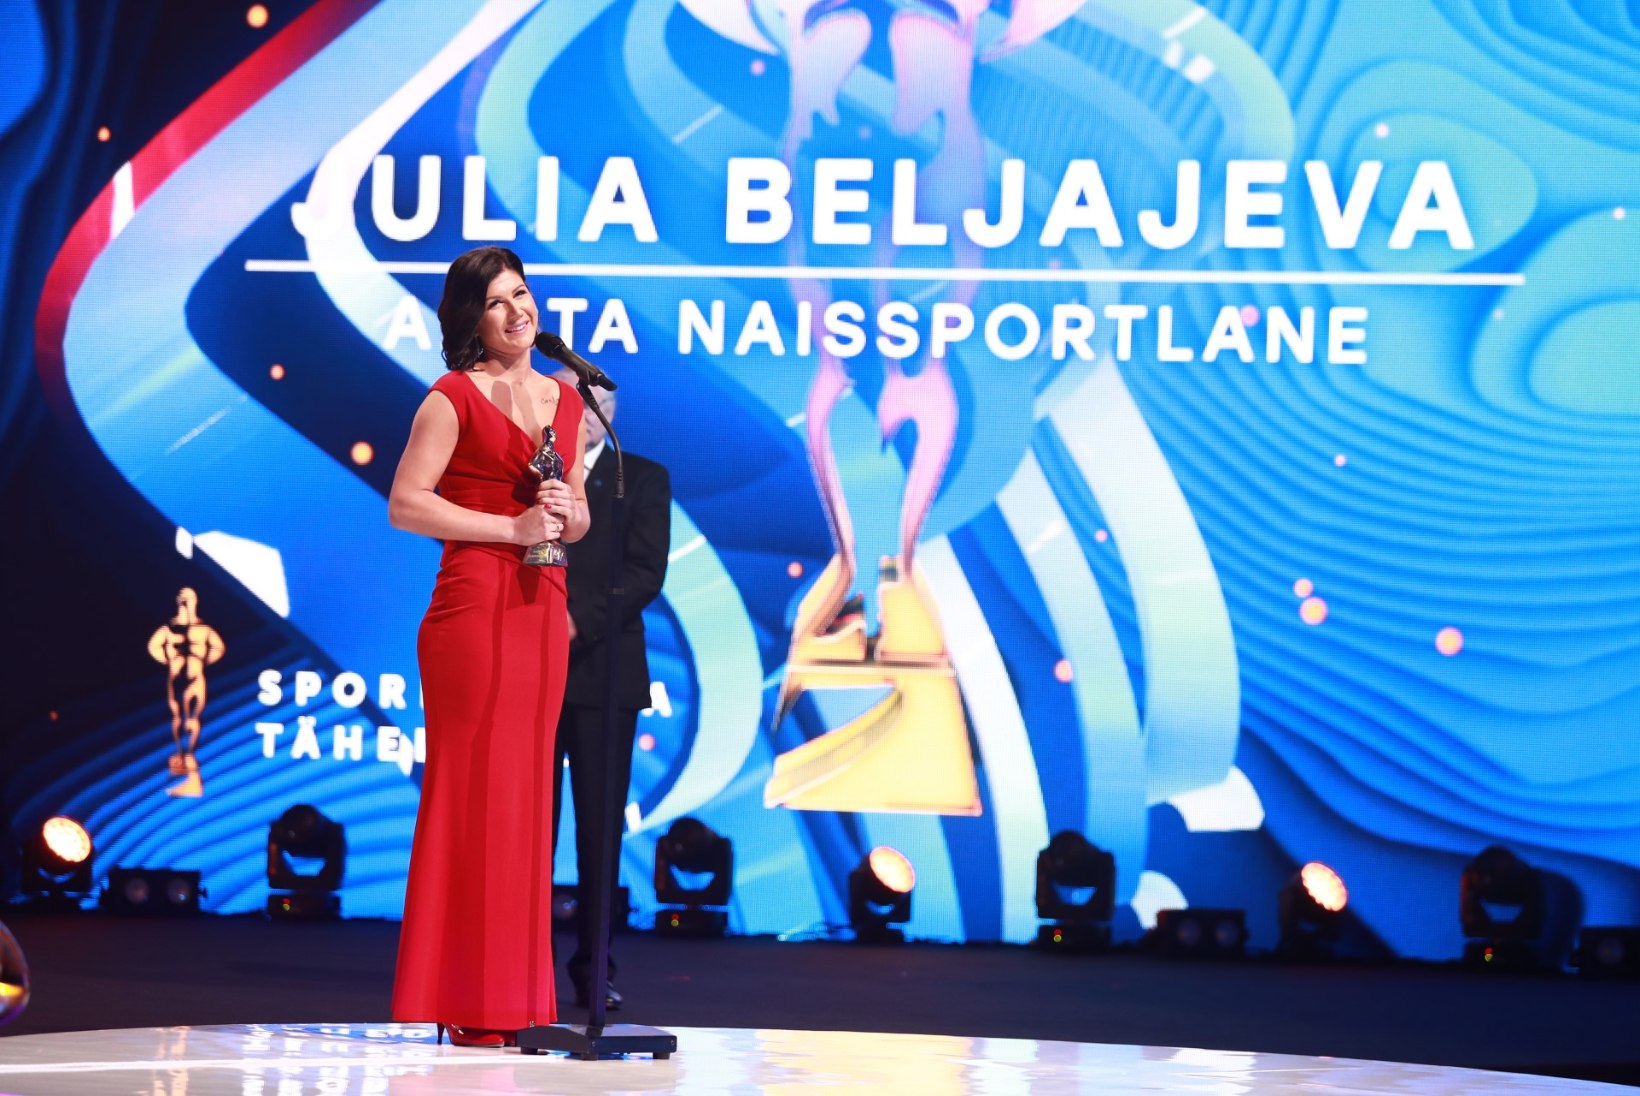 Aasta naissportlane 2017 - Julia Beljajeva